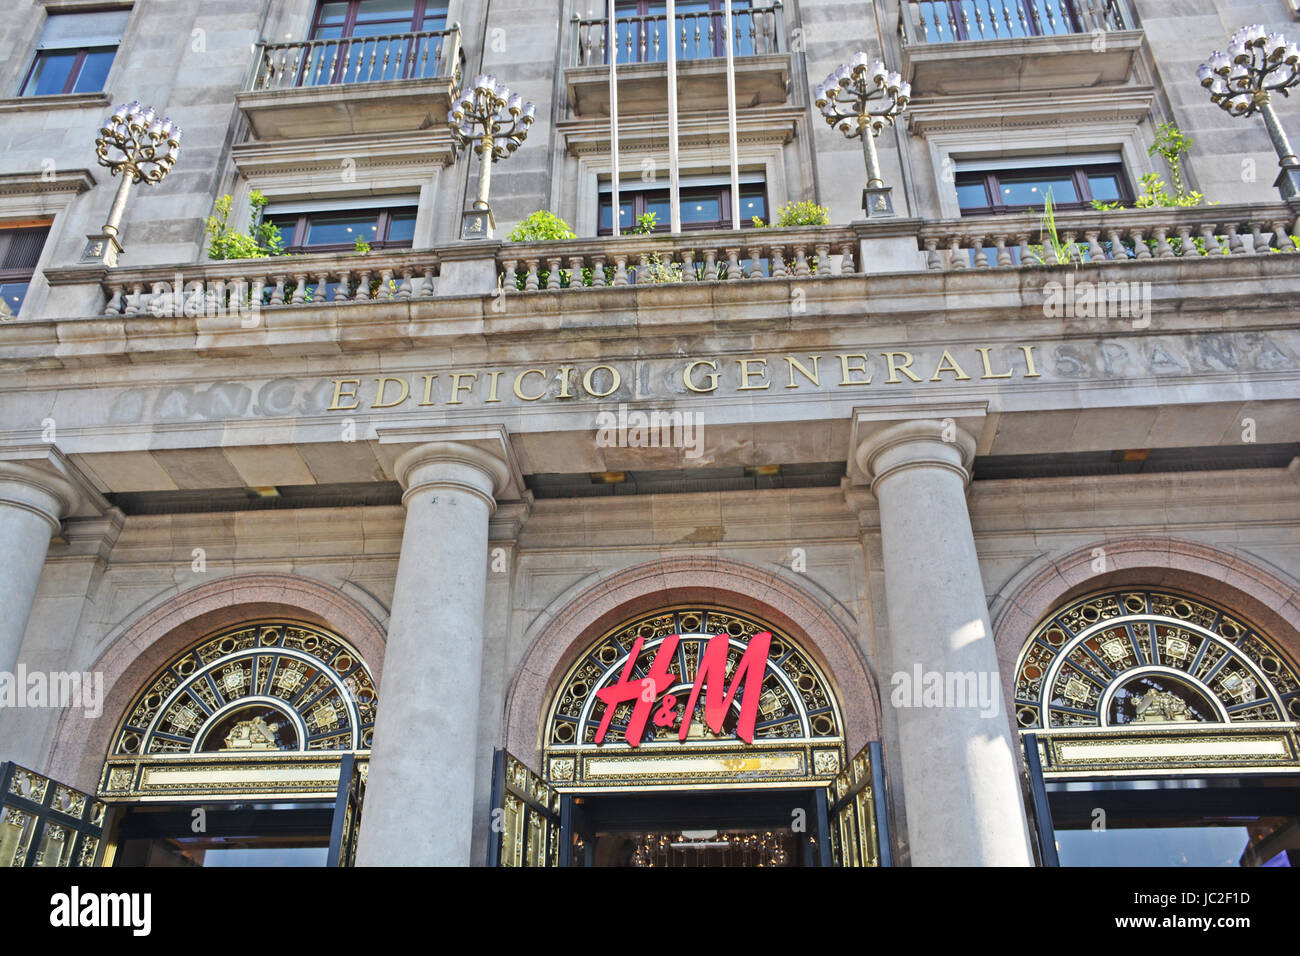 H&M boutique, Edificio Generali, Barcelona, Spain Stock Photo - Alamy